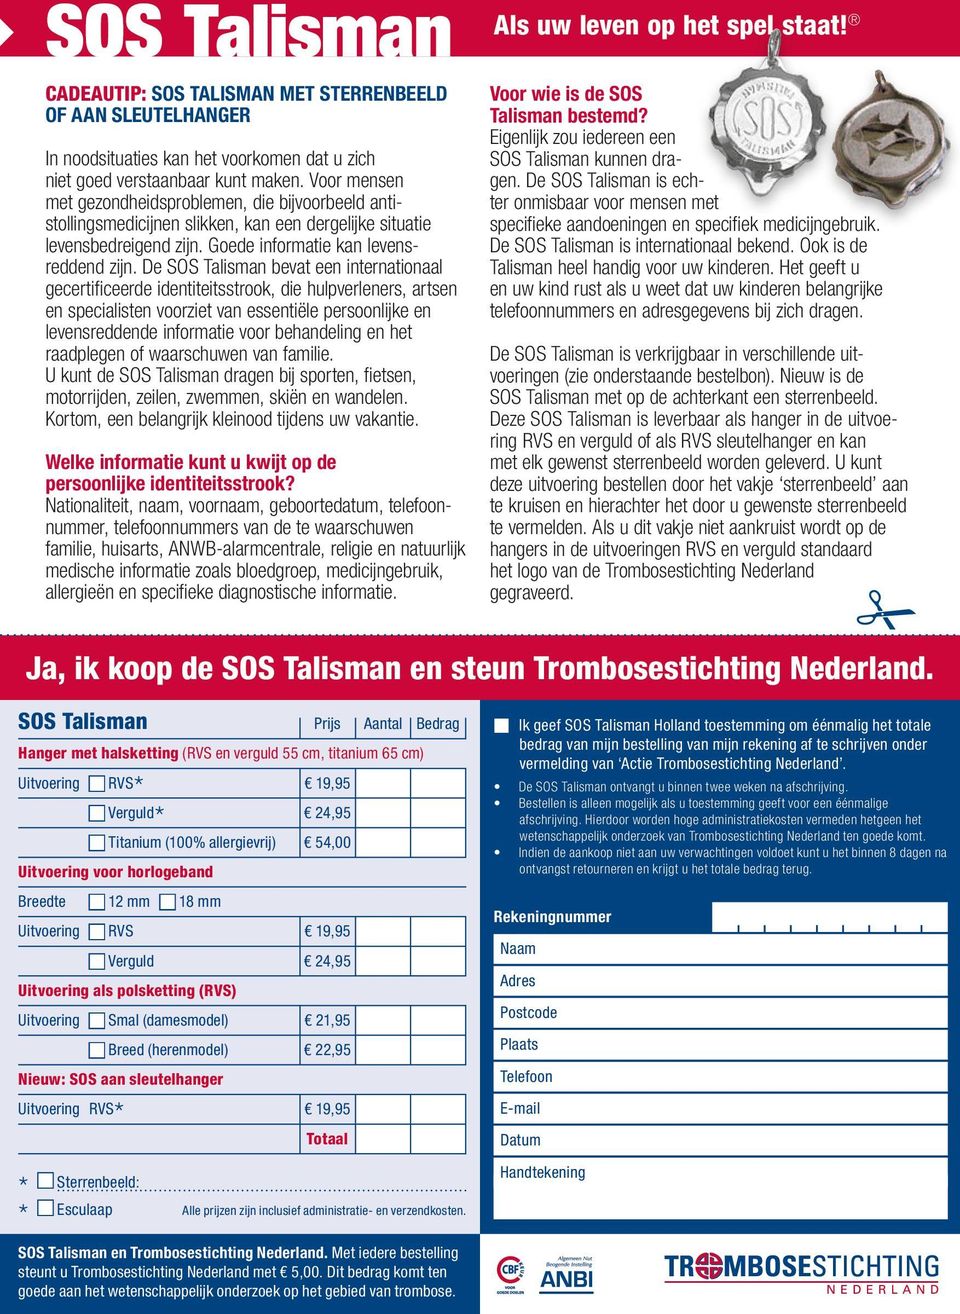 De SOS Talisman bevat een internationaal gecertificeerde identiteitsstrook, die hulpverleners, artsen en specialisten voorziet van essentiële persoonlijke en levensreddende informatie voor